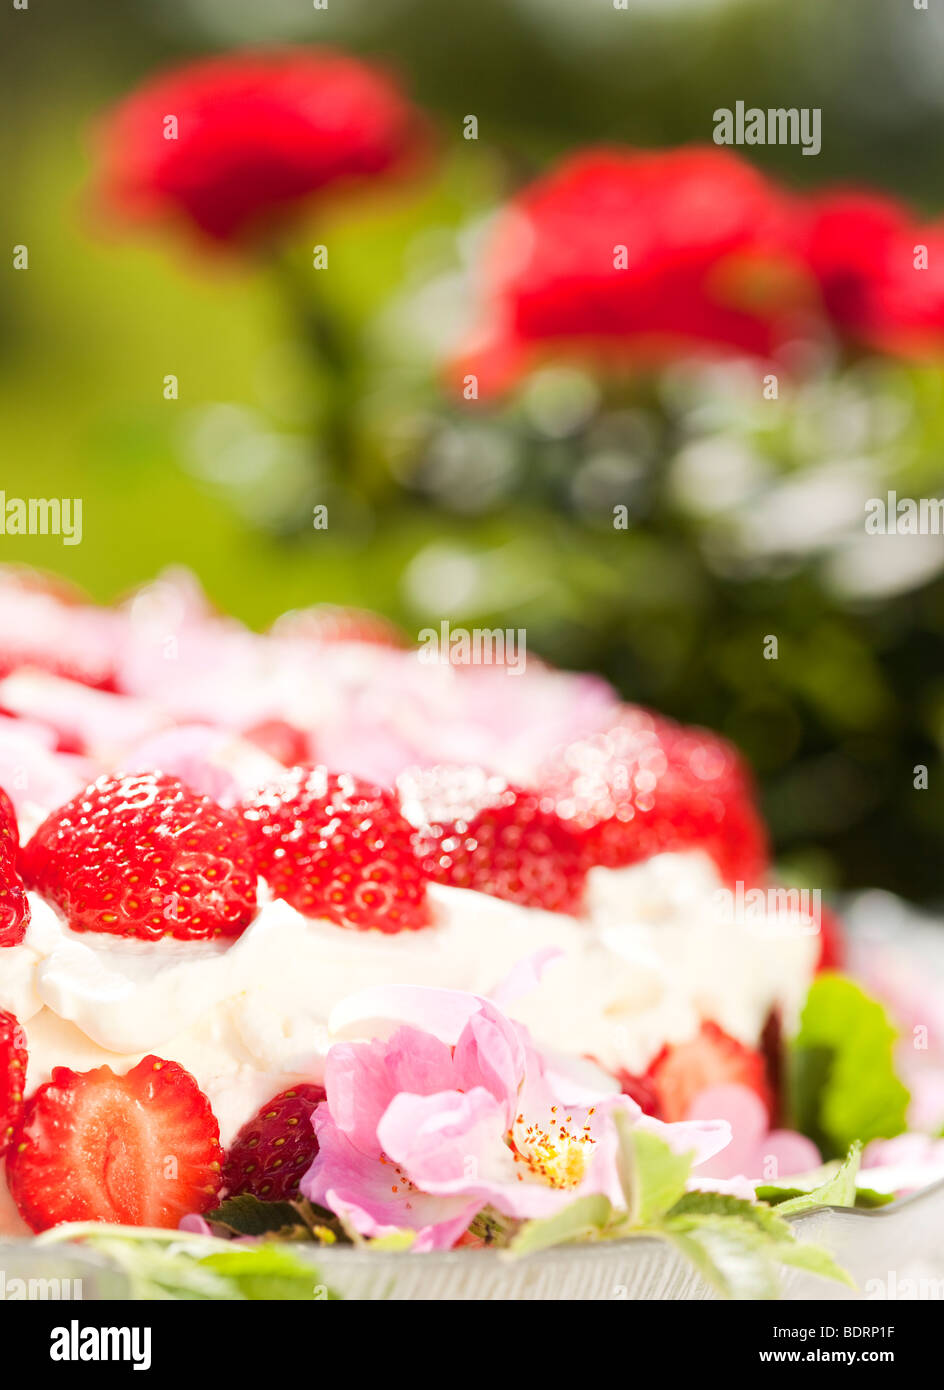 Strawberrycake. Stock Photo